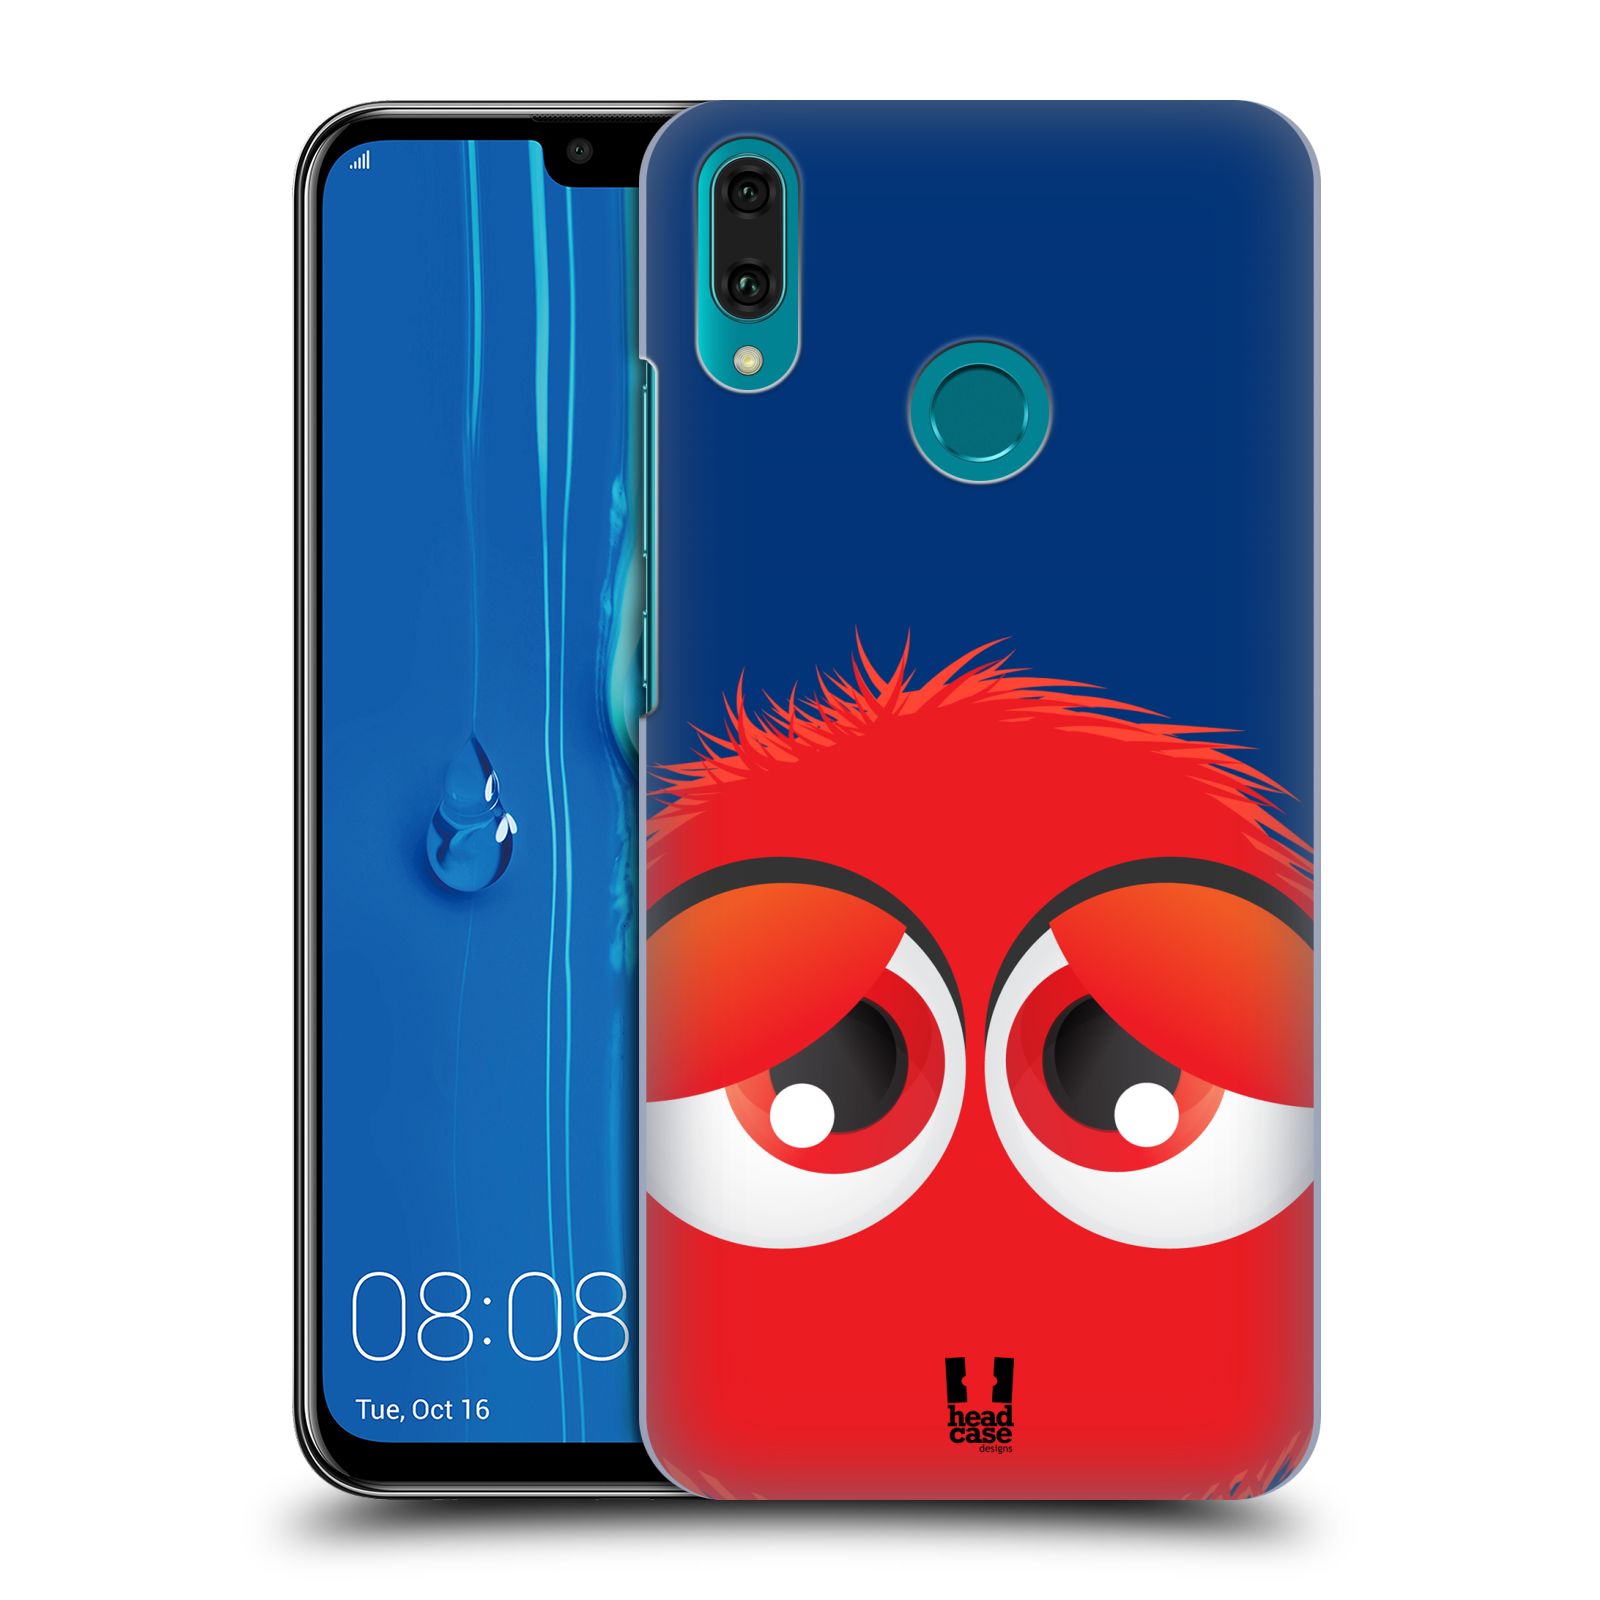 Pouzdro na mobil Huawei Y9 2019 - HEAD CASE - vzor Barevný chlupatý smajlík ČERVENÁ modré pozadí